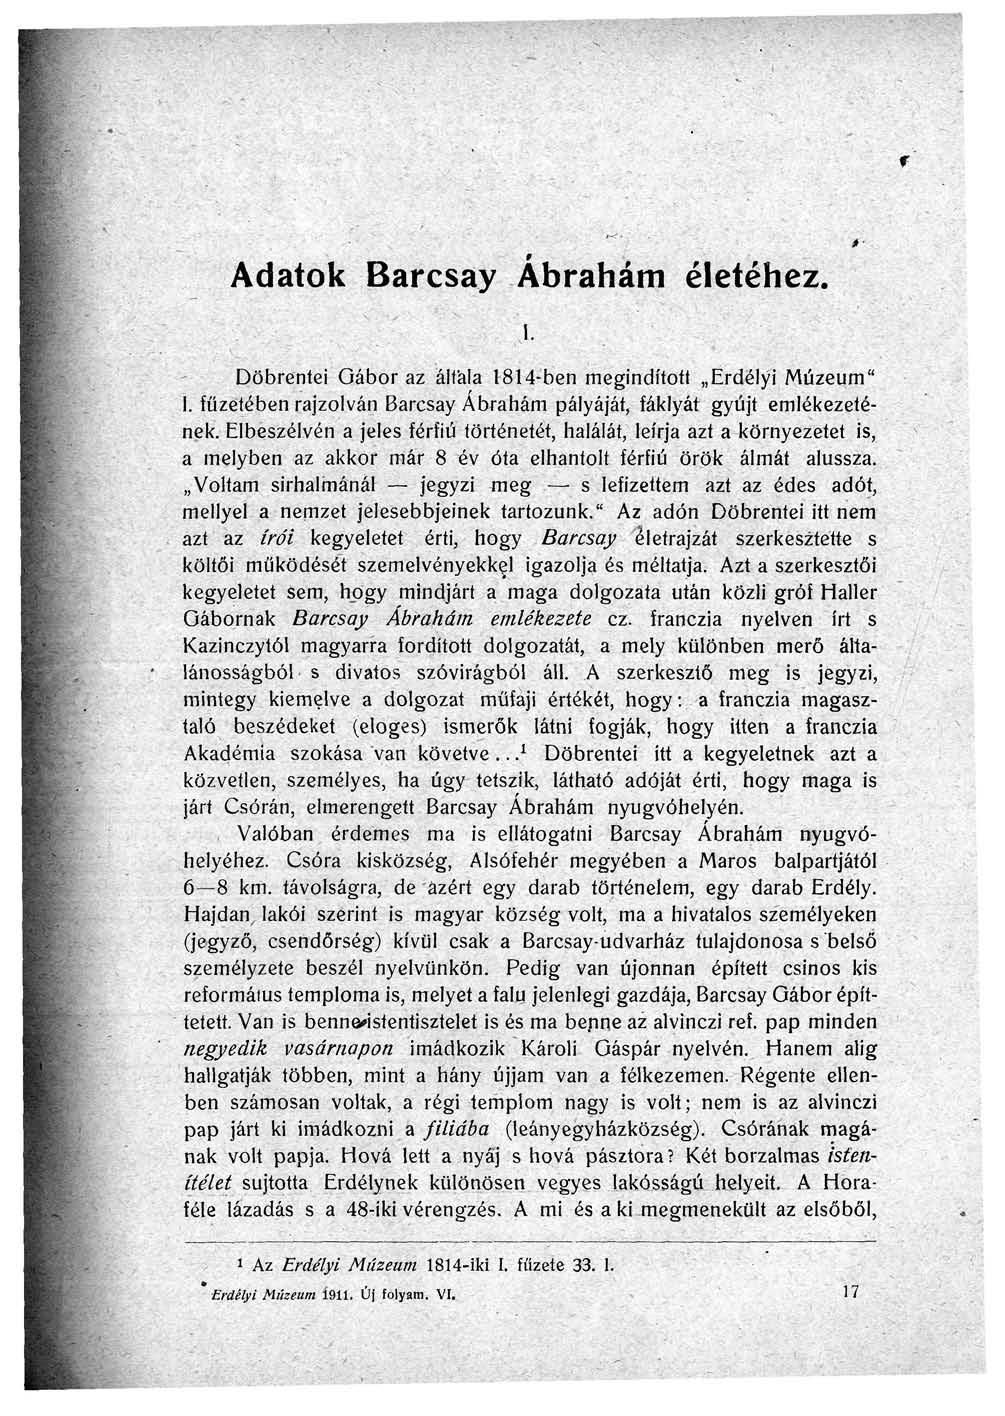 r Adatok Barcsay Ábrahám életéhez. \. Döbrentei Gábor az áltála 1814-ben megindított Erdélyi Múzeum" I. füzetében rajzolván Barcsay Ábrahám pályáját, fáklyát gyújt emlékezetének.